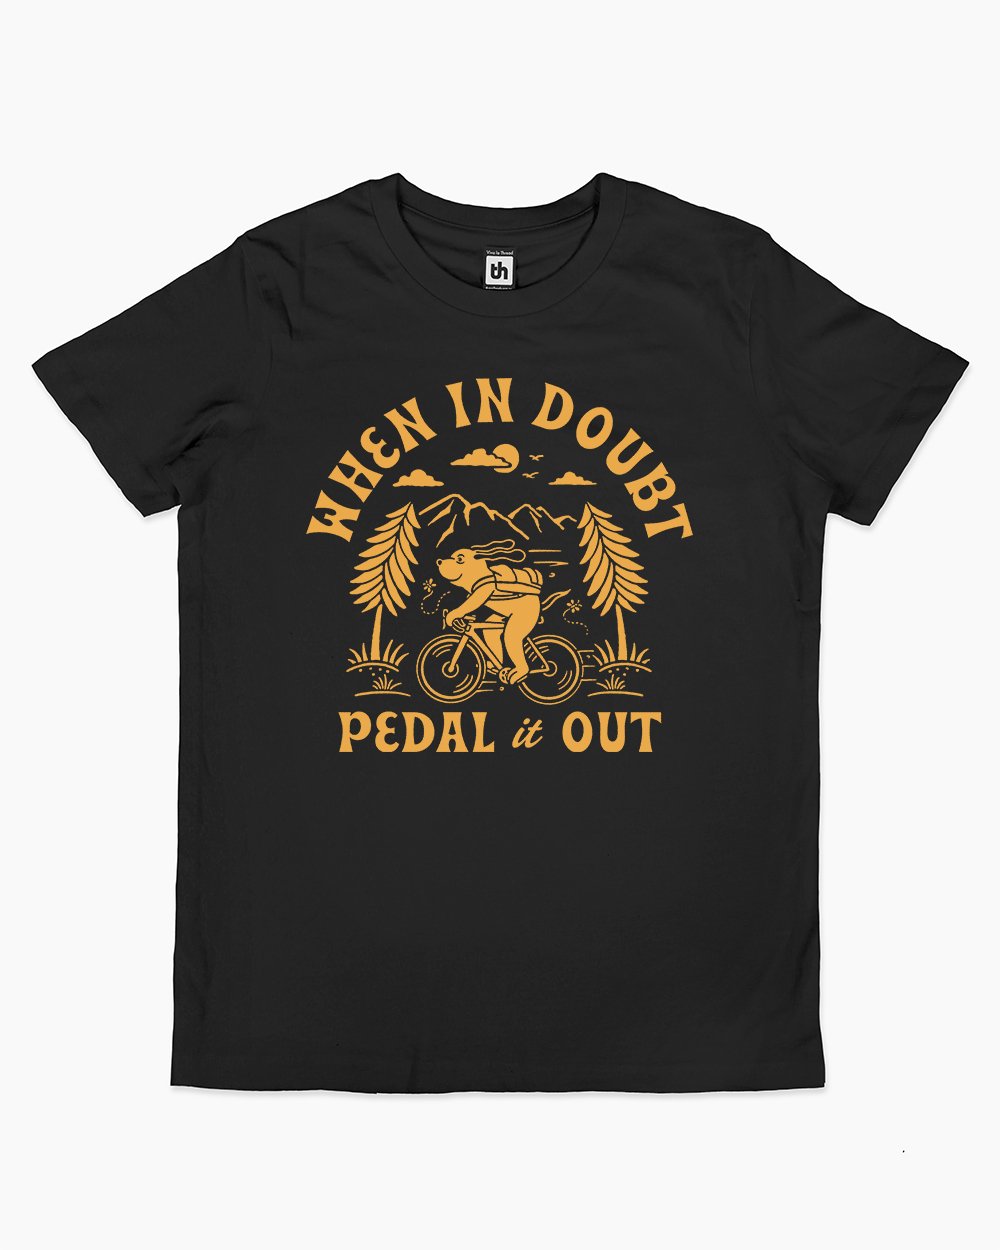 When In Doubt Pedal It Out Kids T-Shirt Australia Online #colour_black